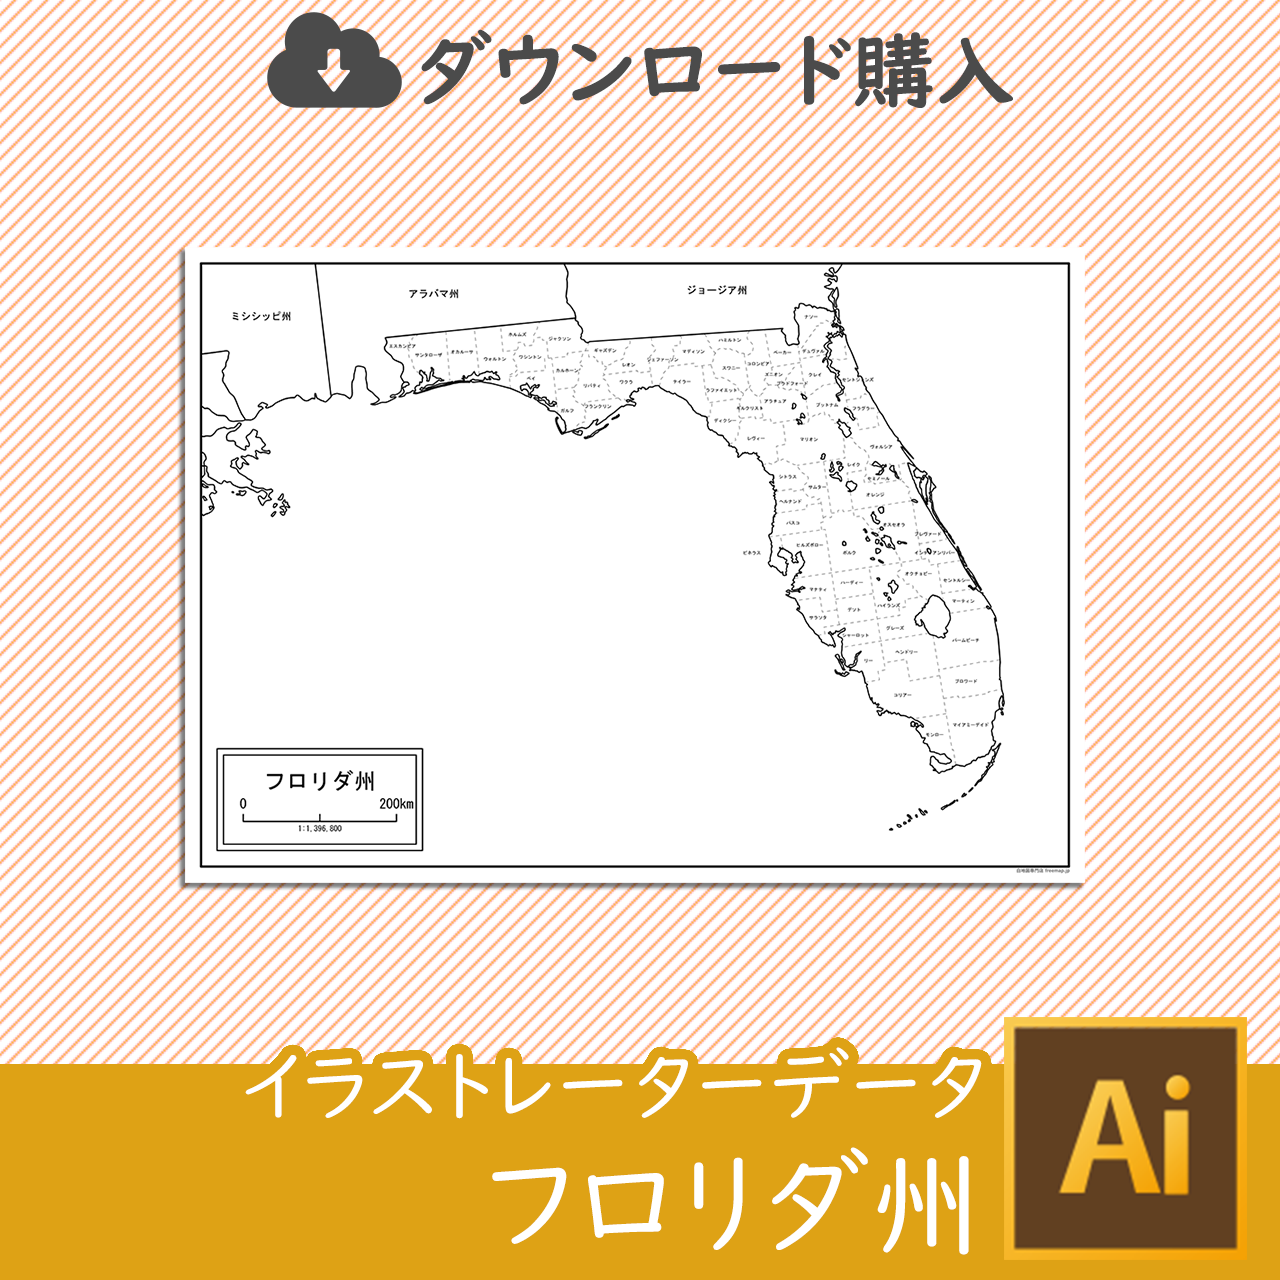 フロリダ州のaiデータのサムネイル画像